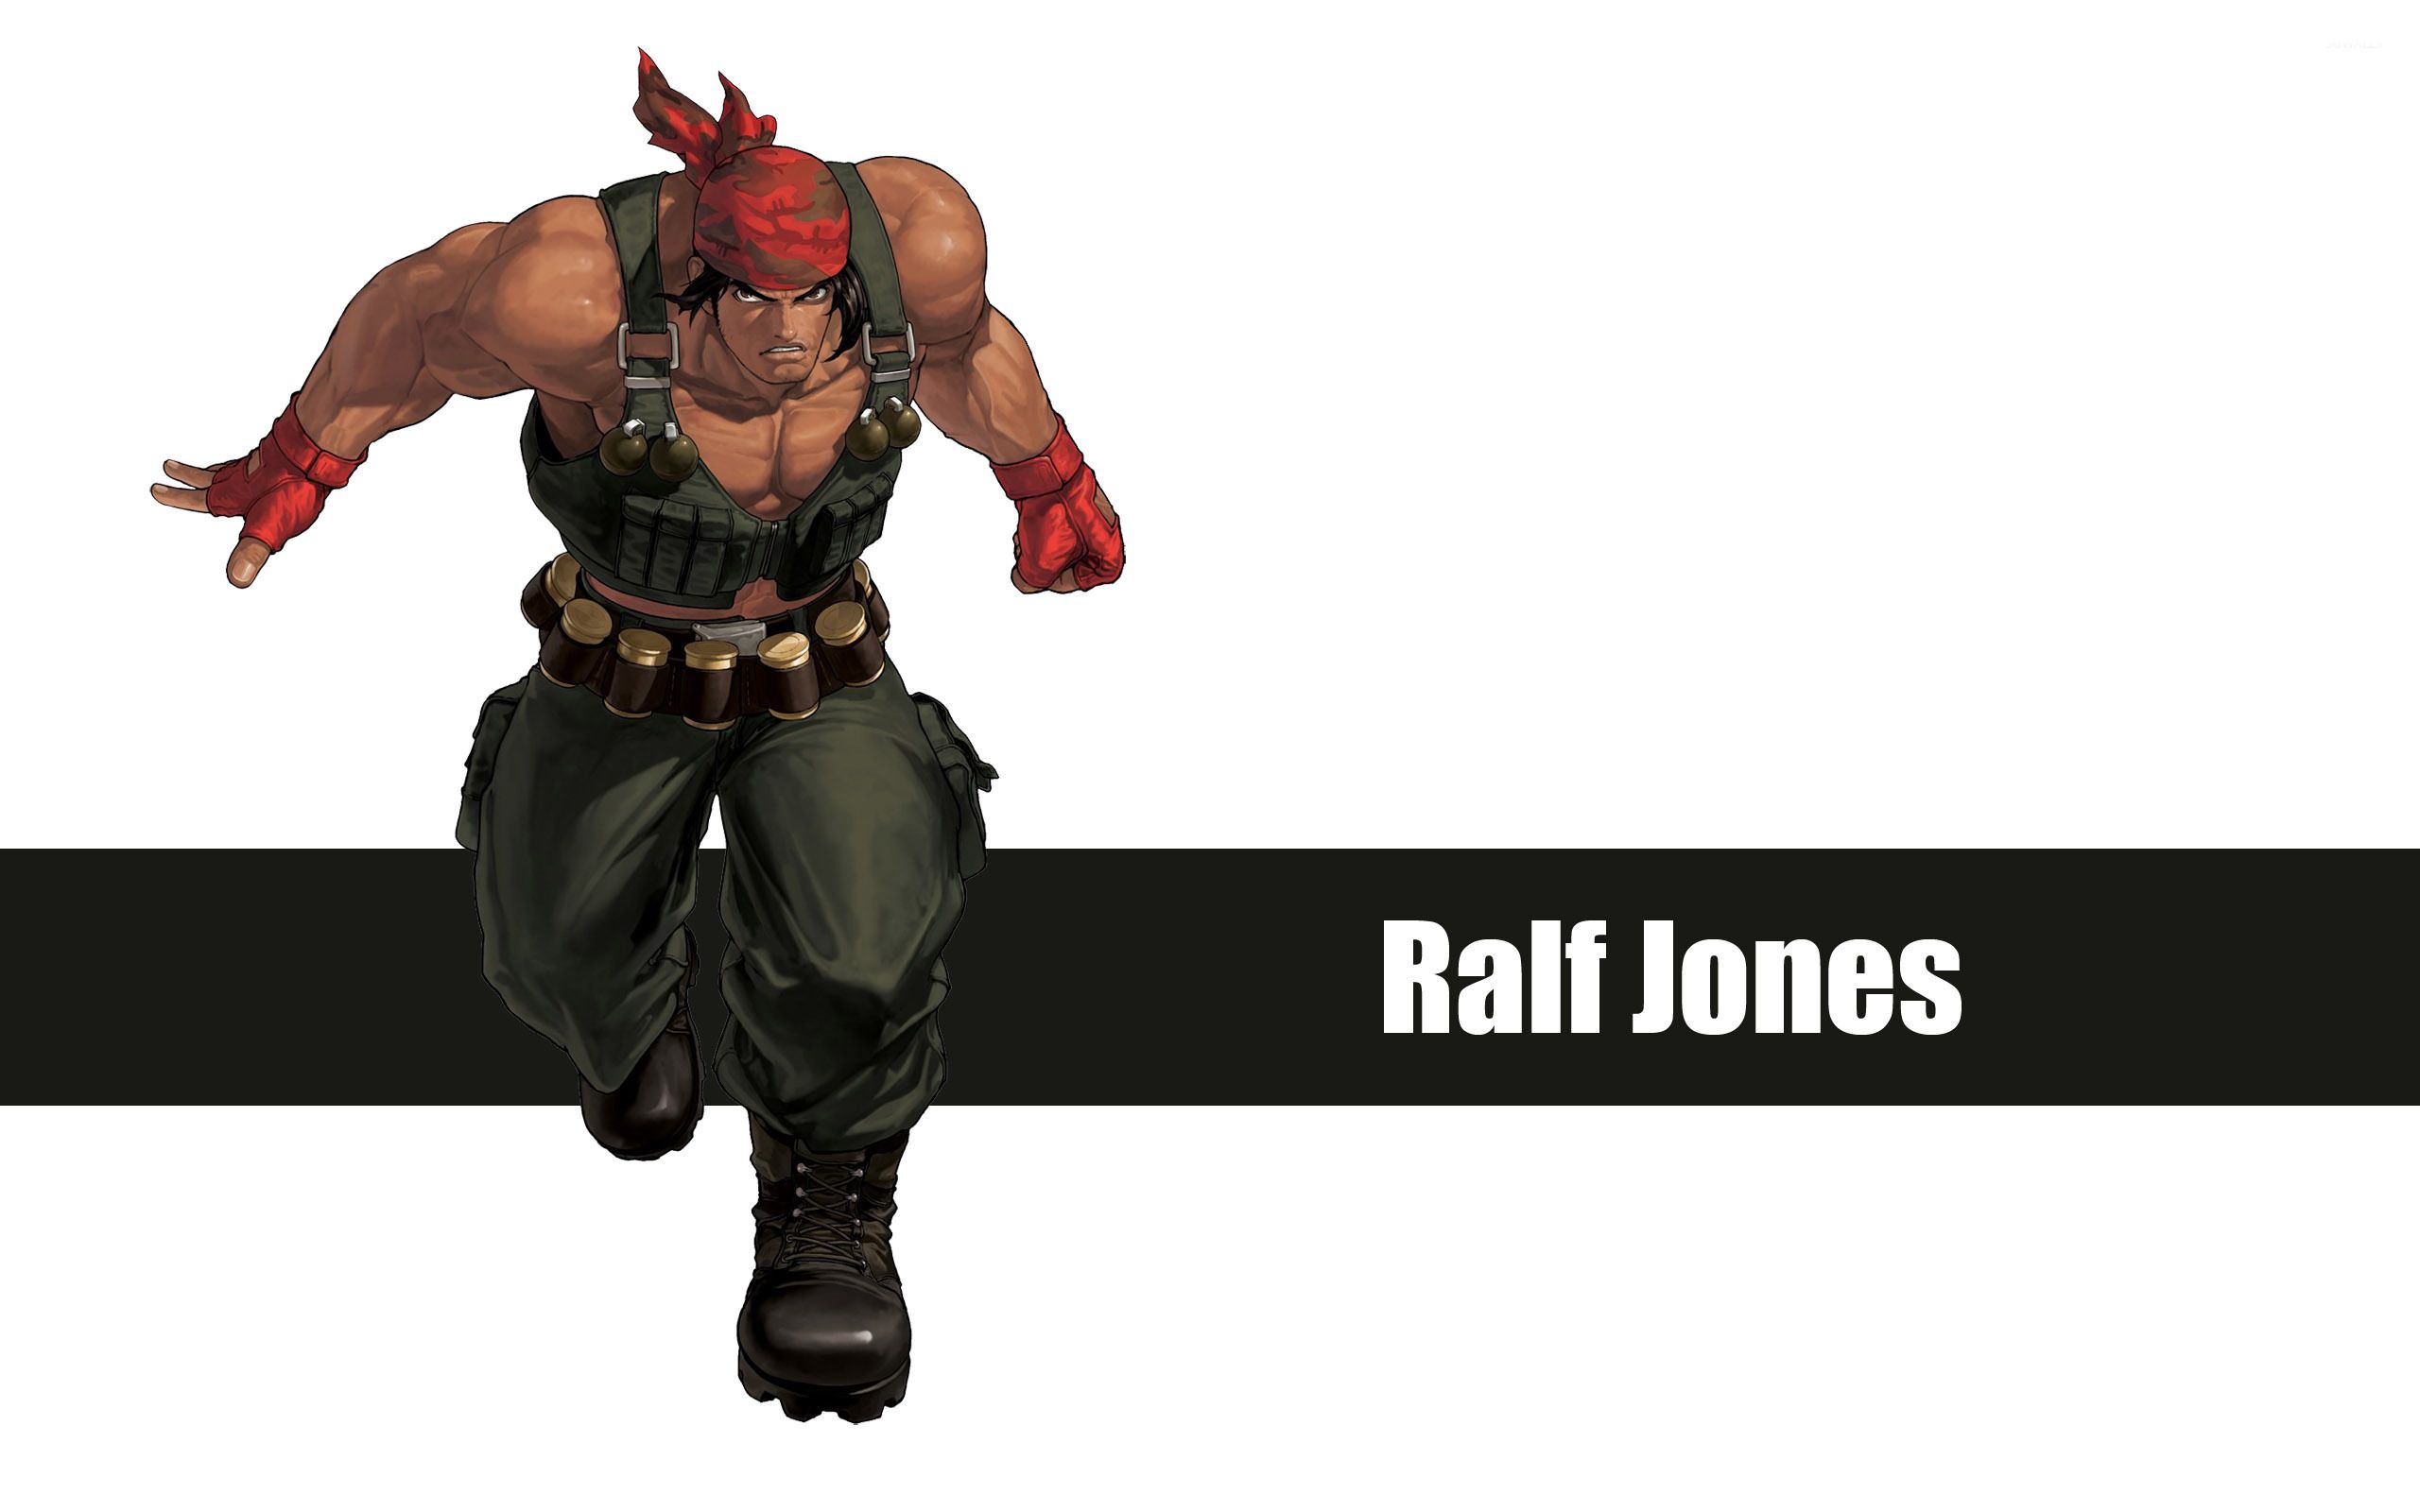 Ralf Jones King of Fighters wallpaper wallpaper